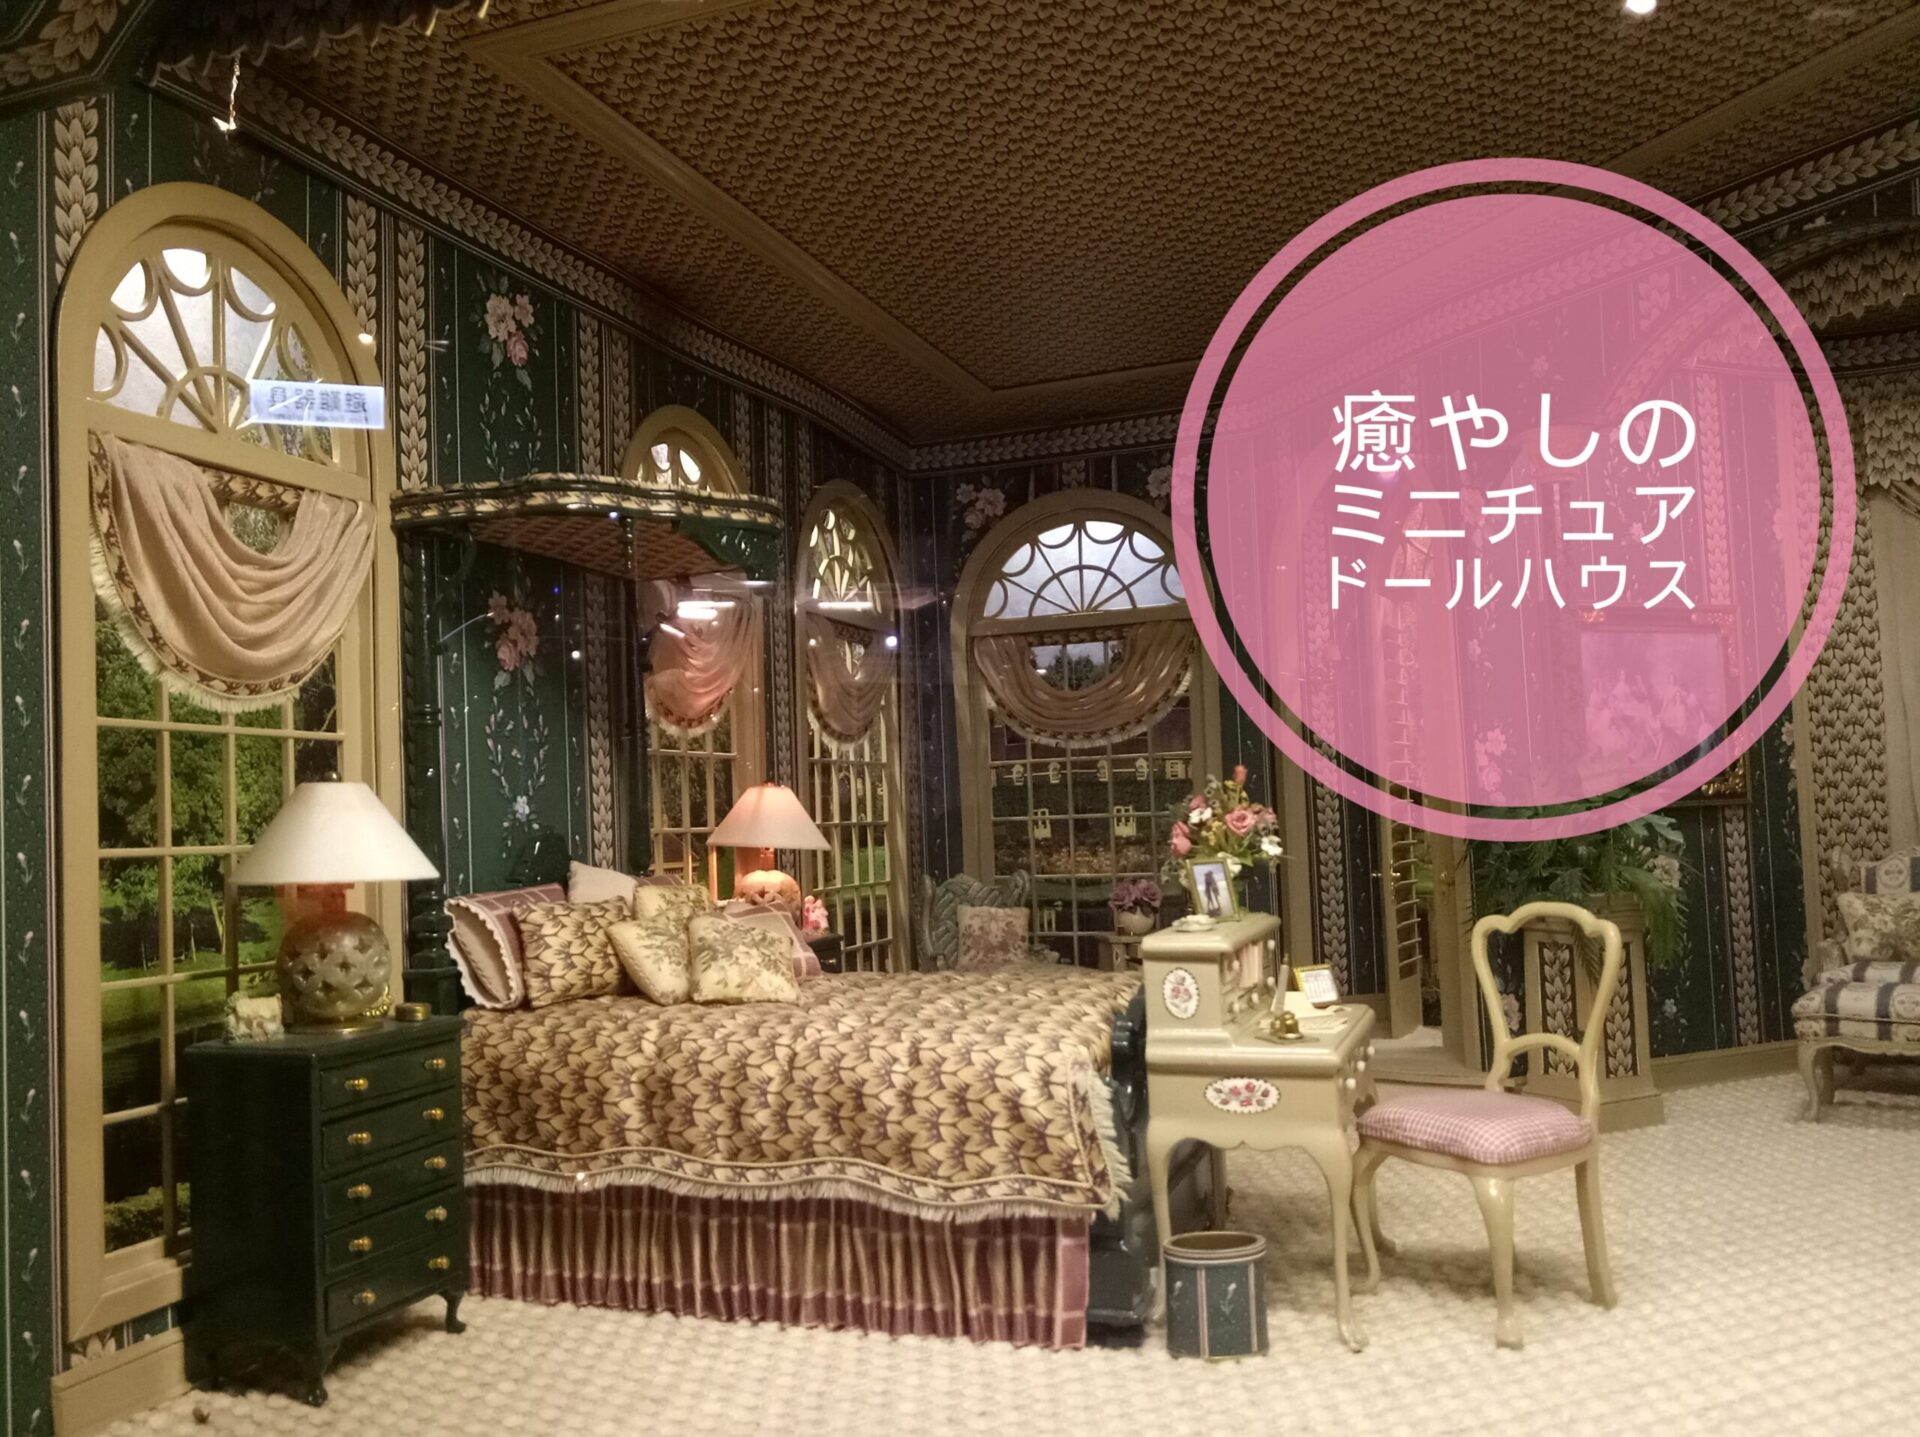 袖珍博物館~台北ｵﾌｨｽ街のミニチュアドールハウス!癒し&見所満載